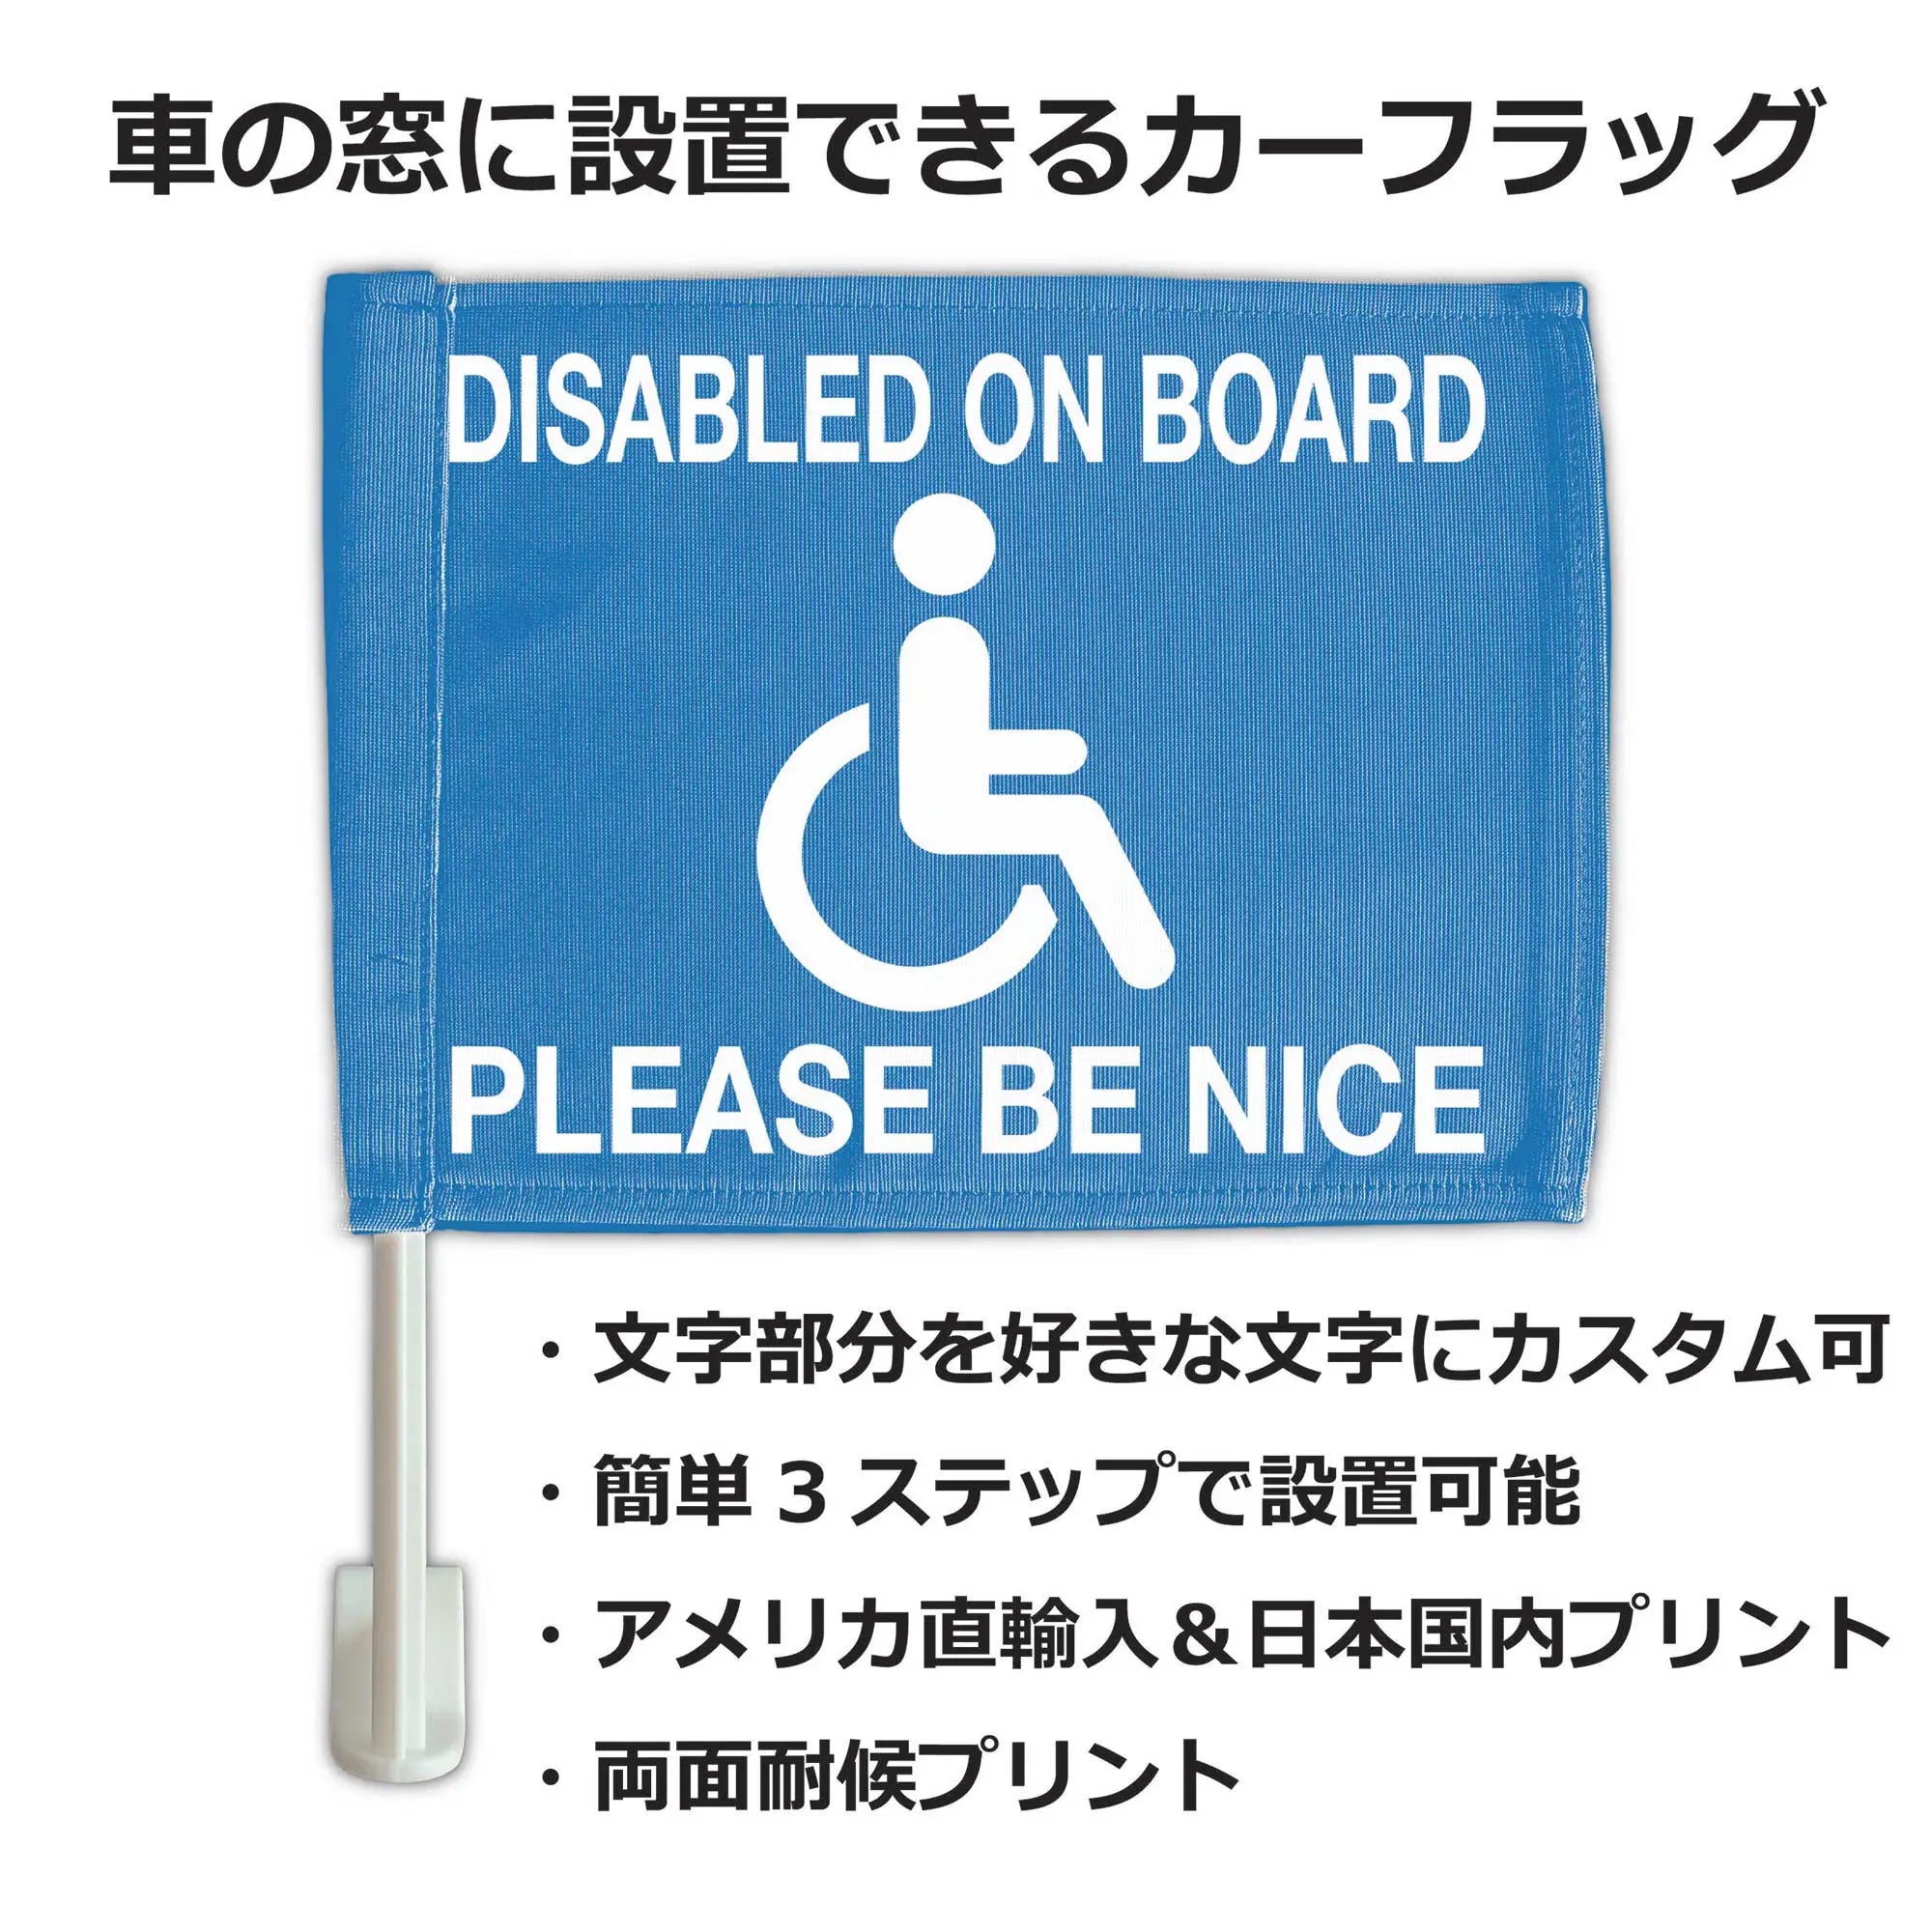 店舗・自動車向け「車椅子」「障害者マーク」ステッカー外から貼るタイプ(10x10cm)